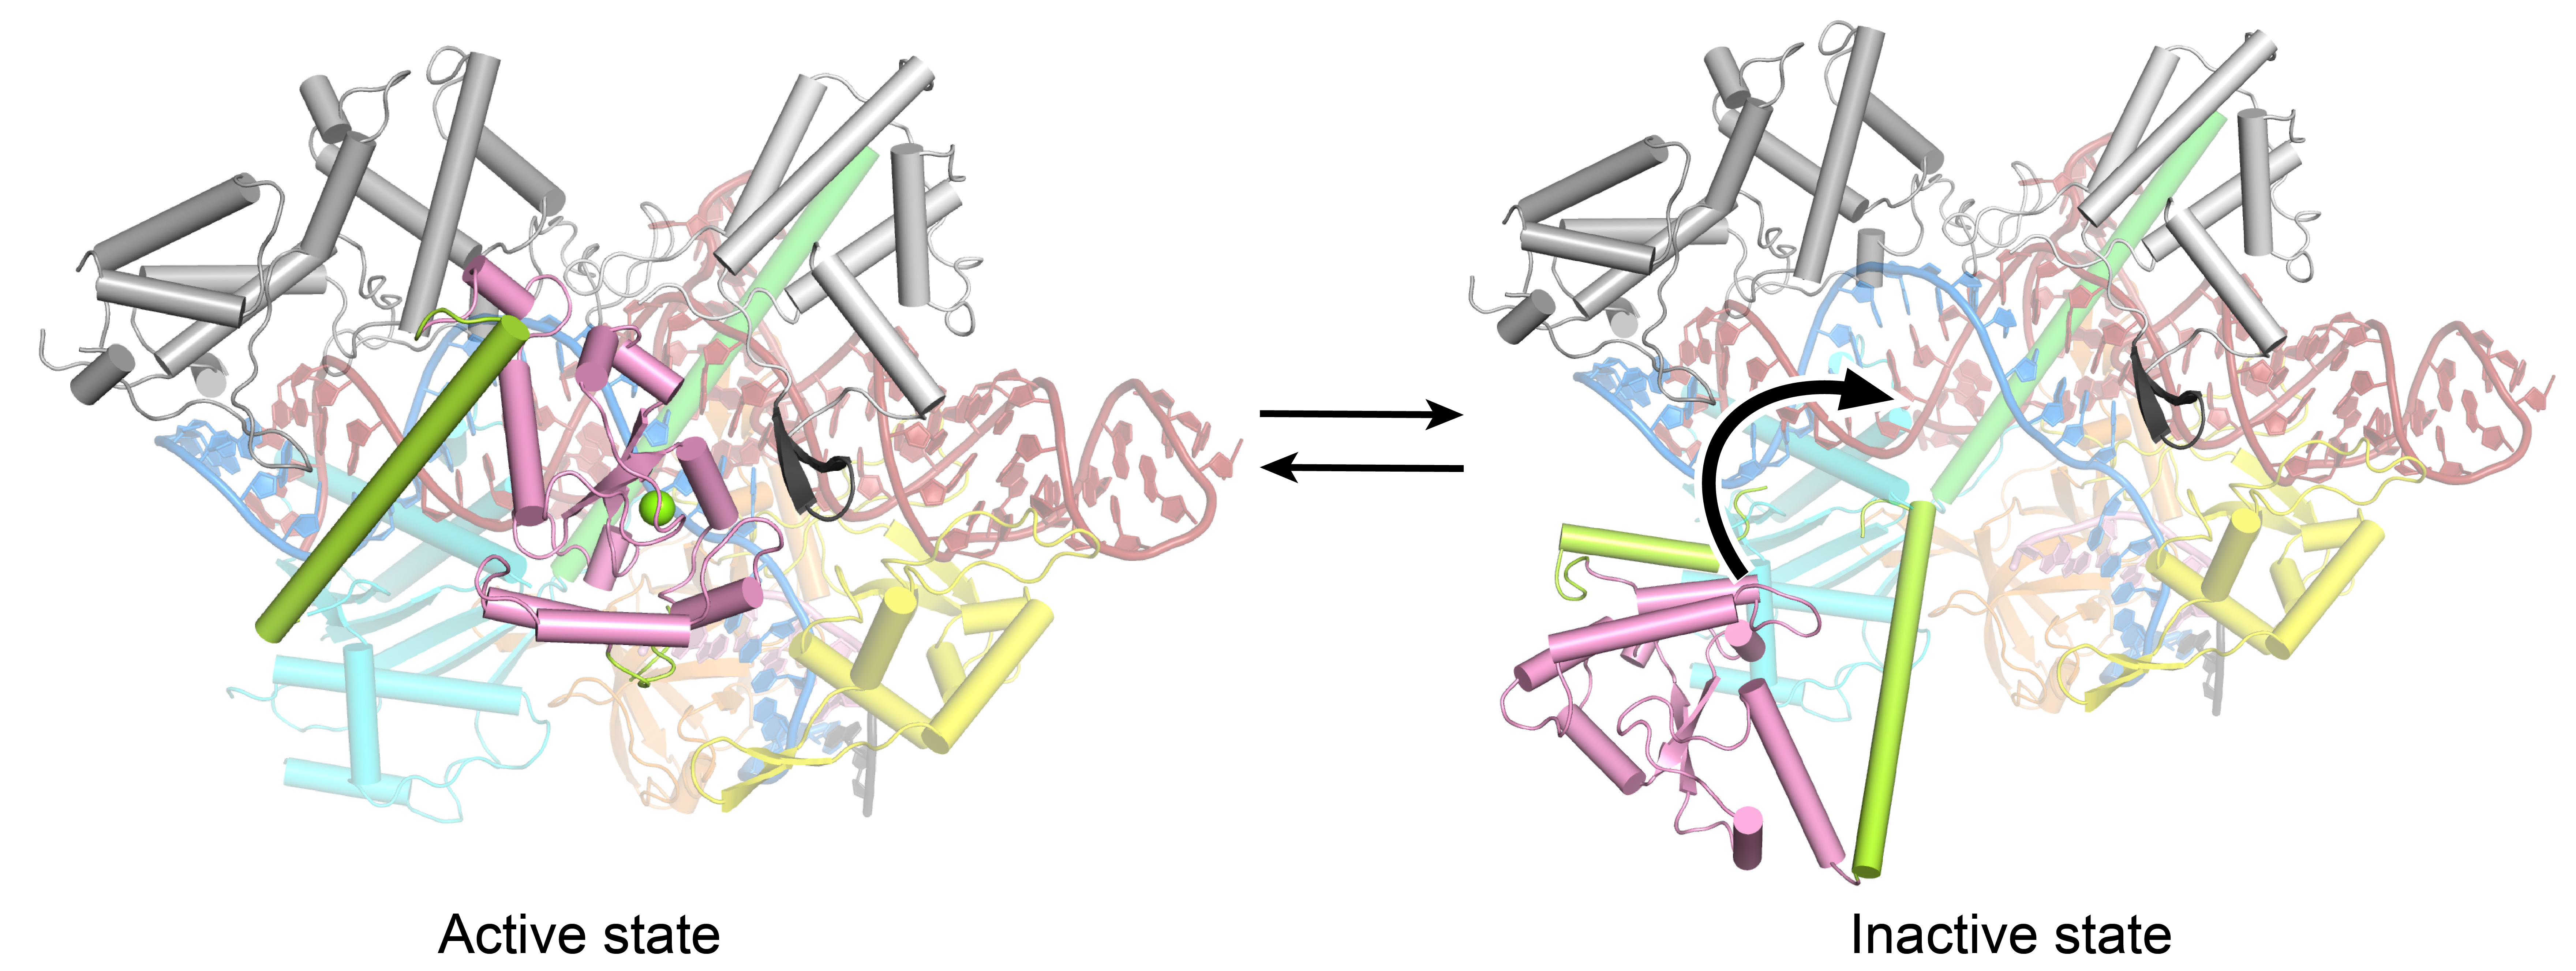 物质学院季泉江课题组揭示嗜热链球菌Cas9核酸酶催化机制并进化拓展其PAM DNA识别